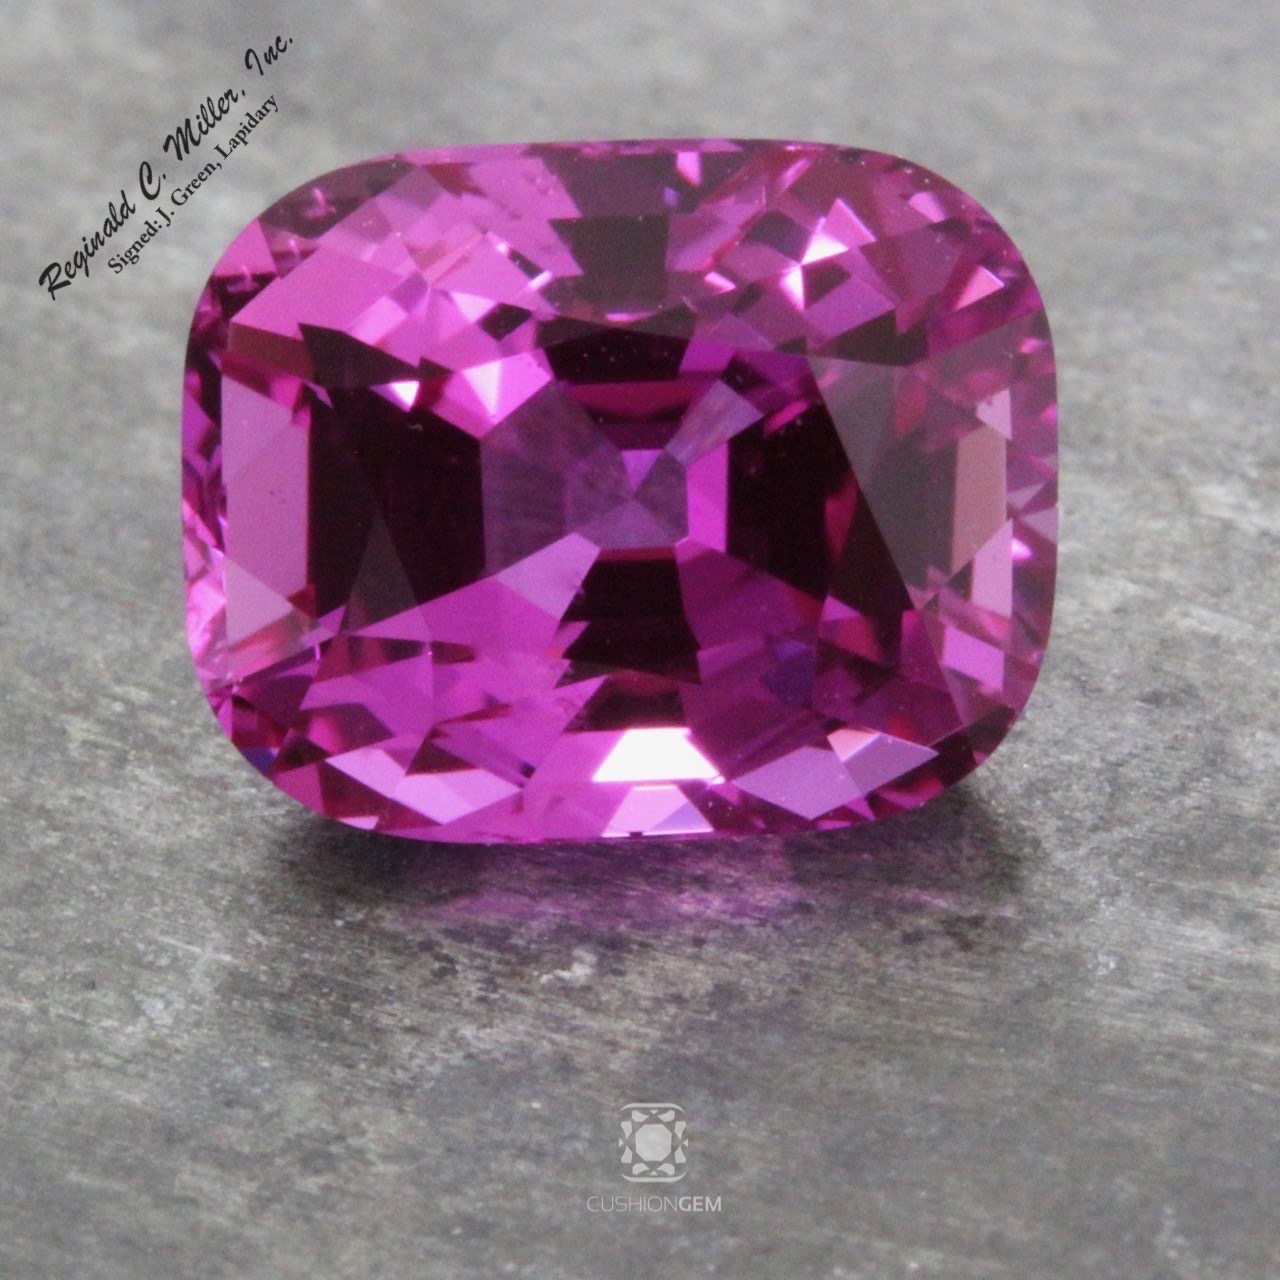 A 5.55 carat pink sapphire cut by Jerrold Green